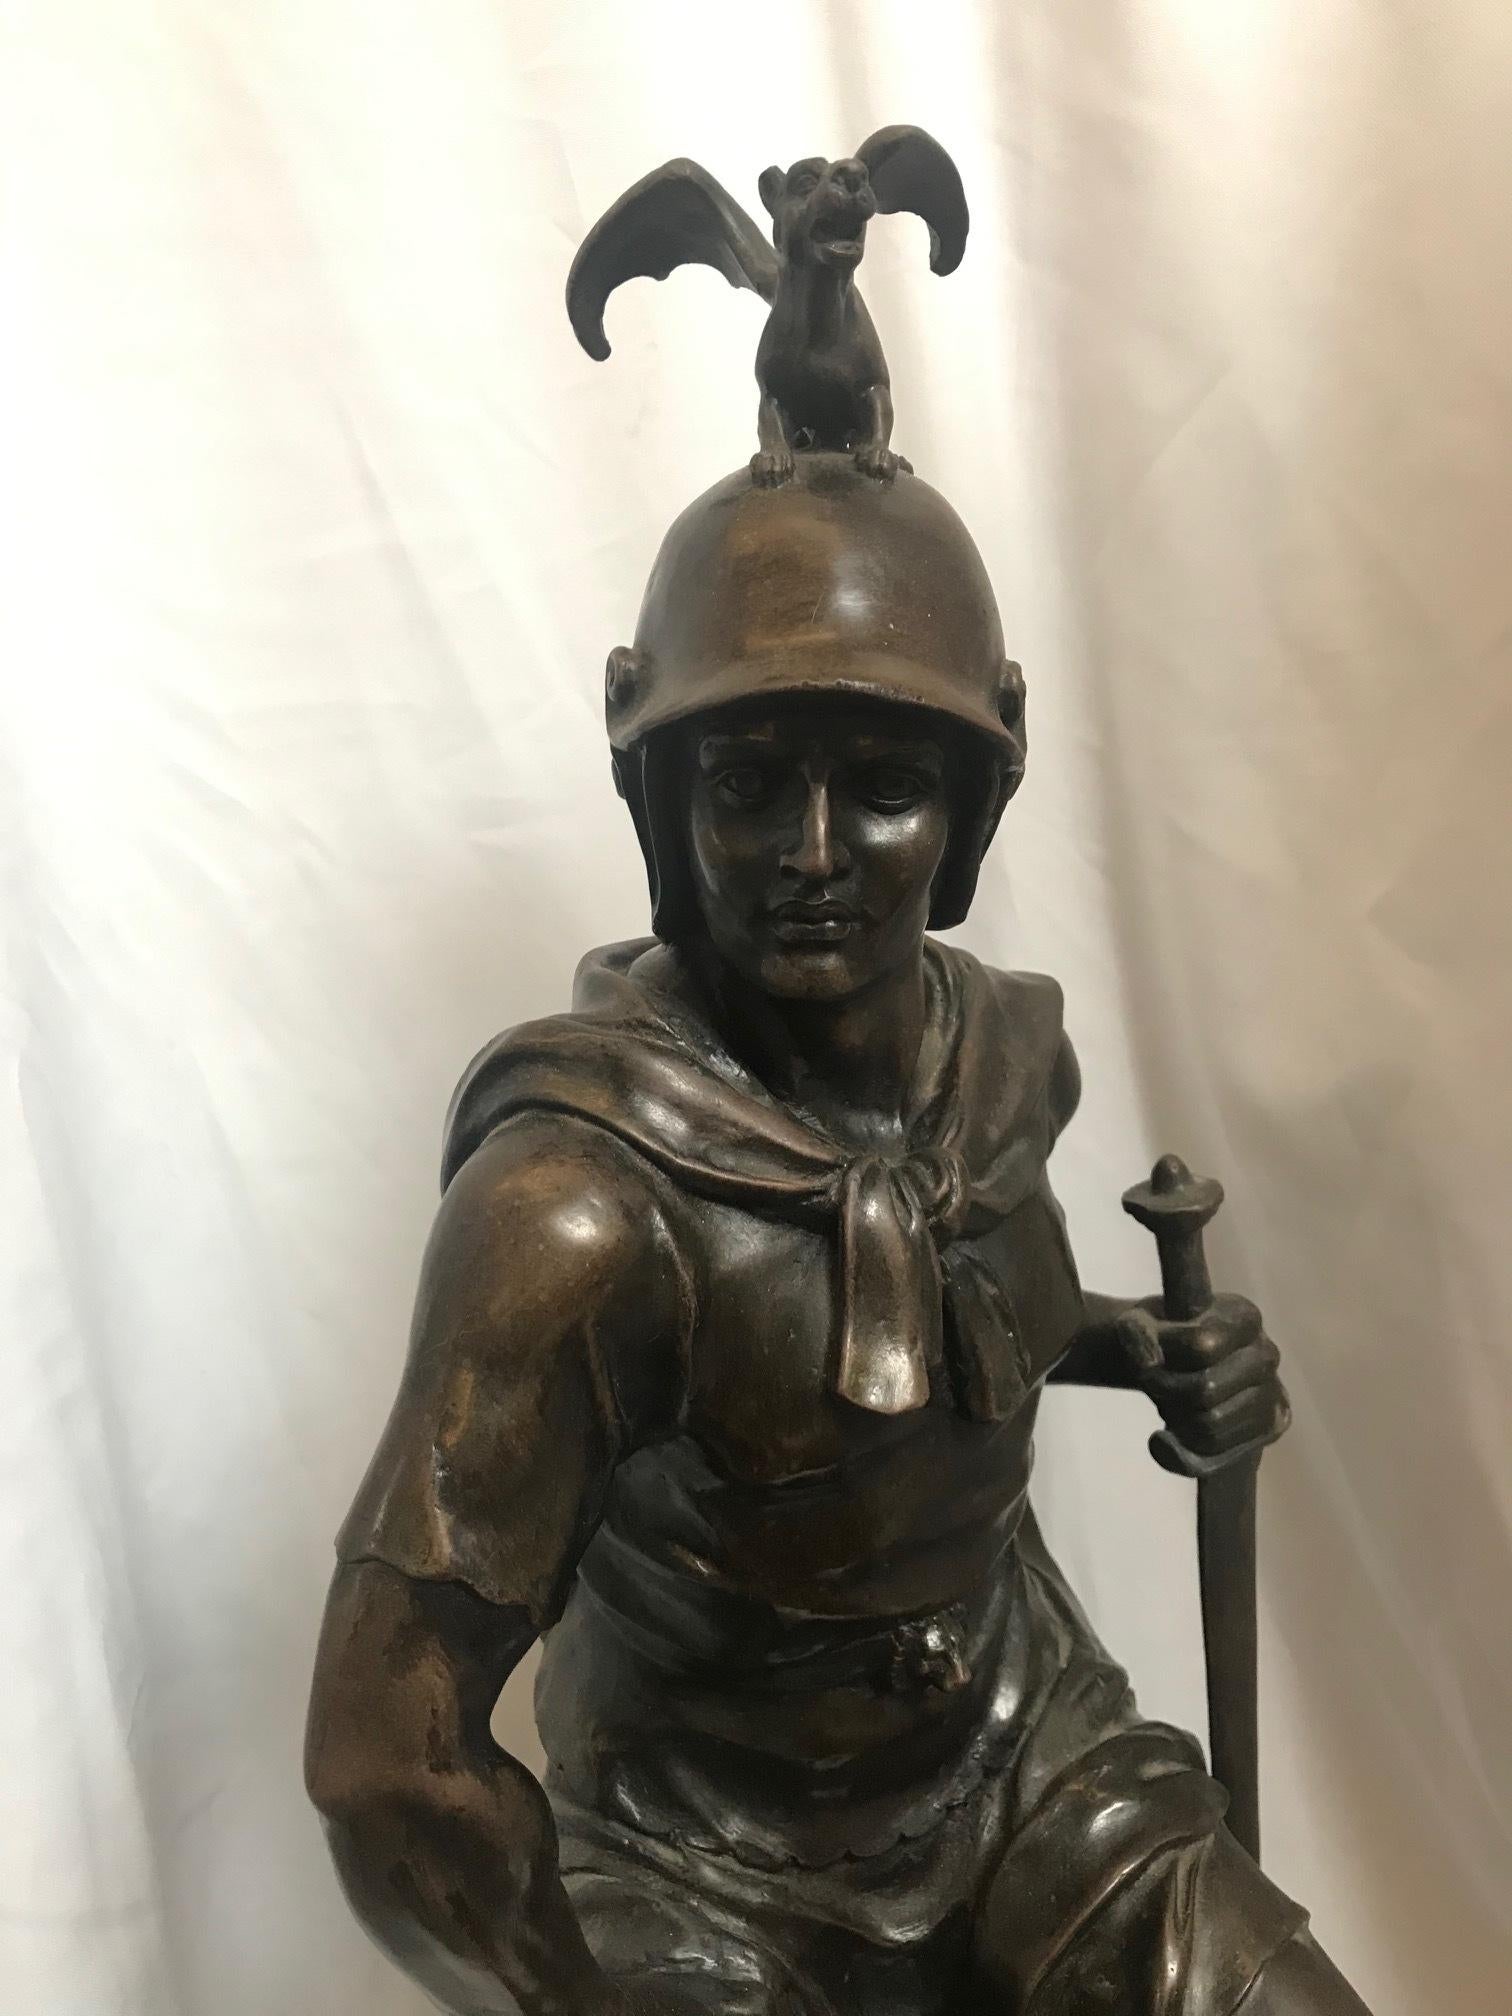 maid soldier bronze